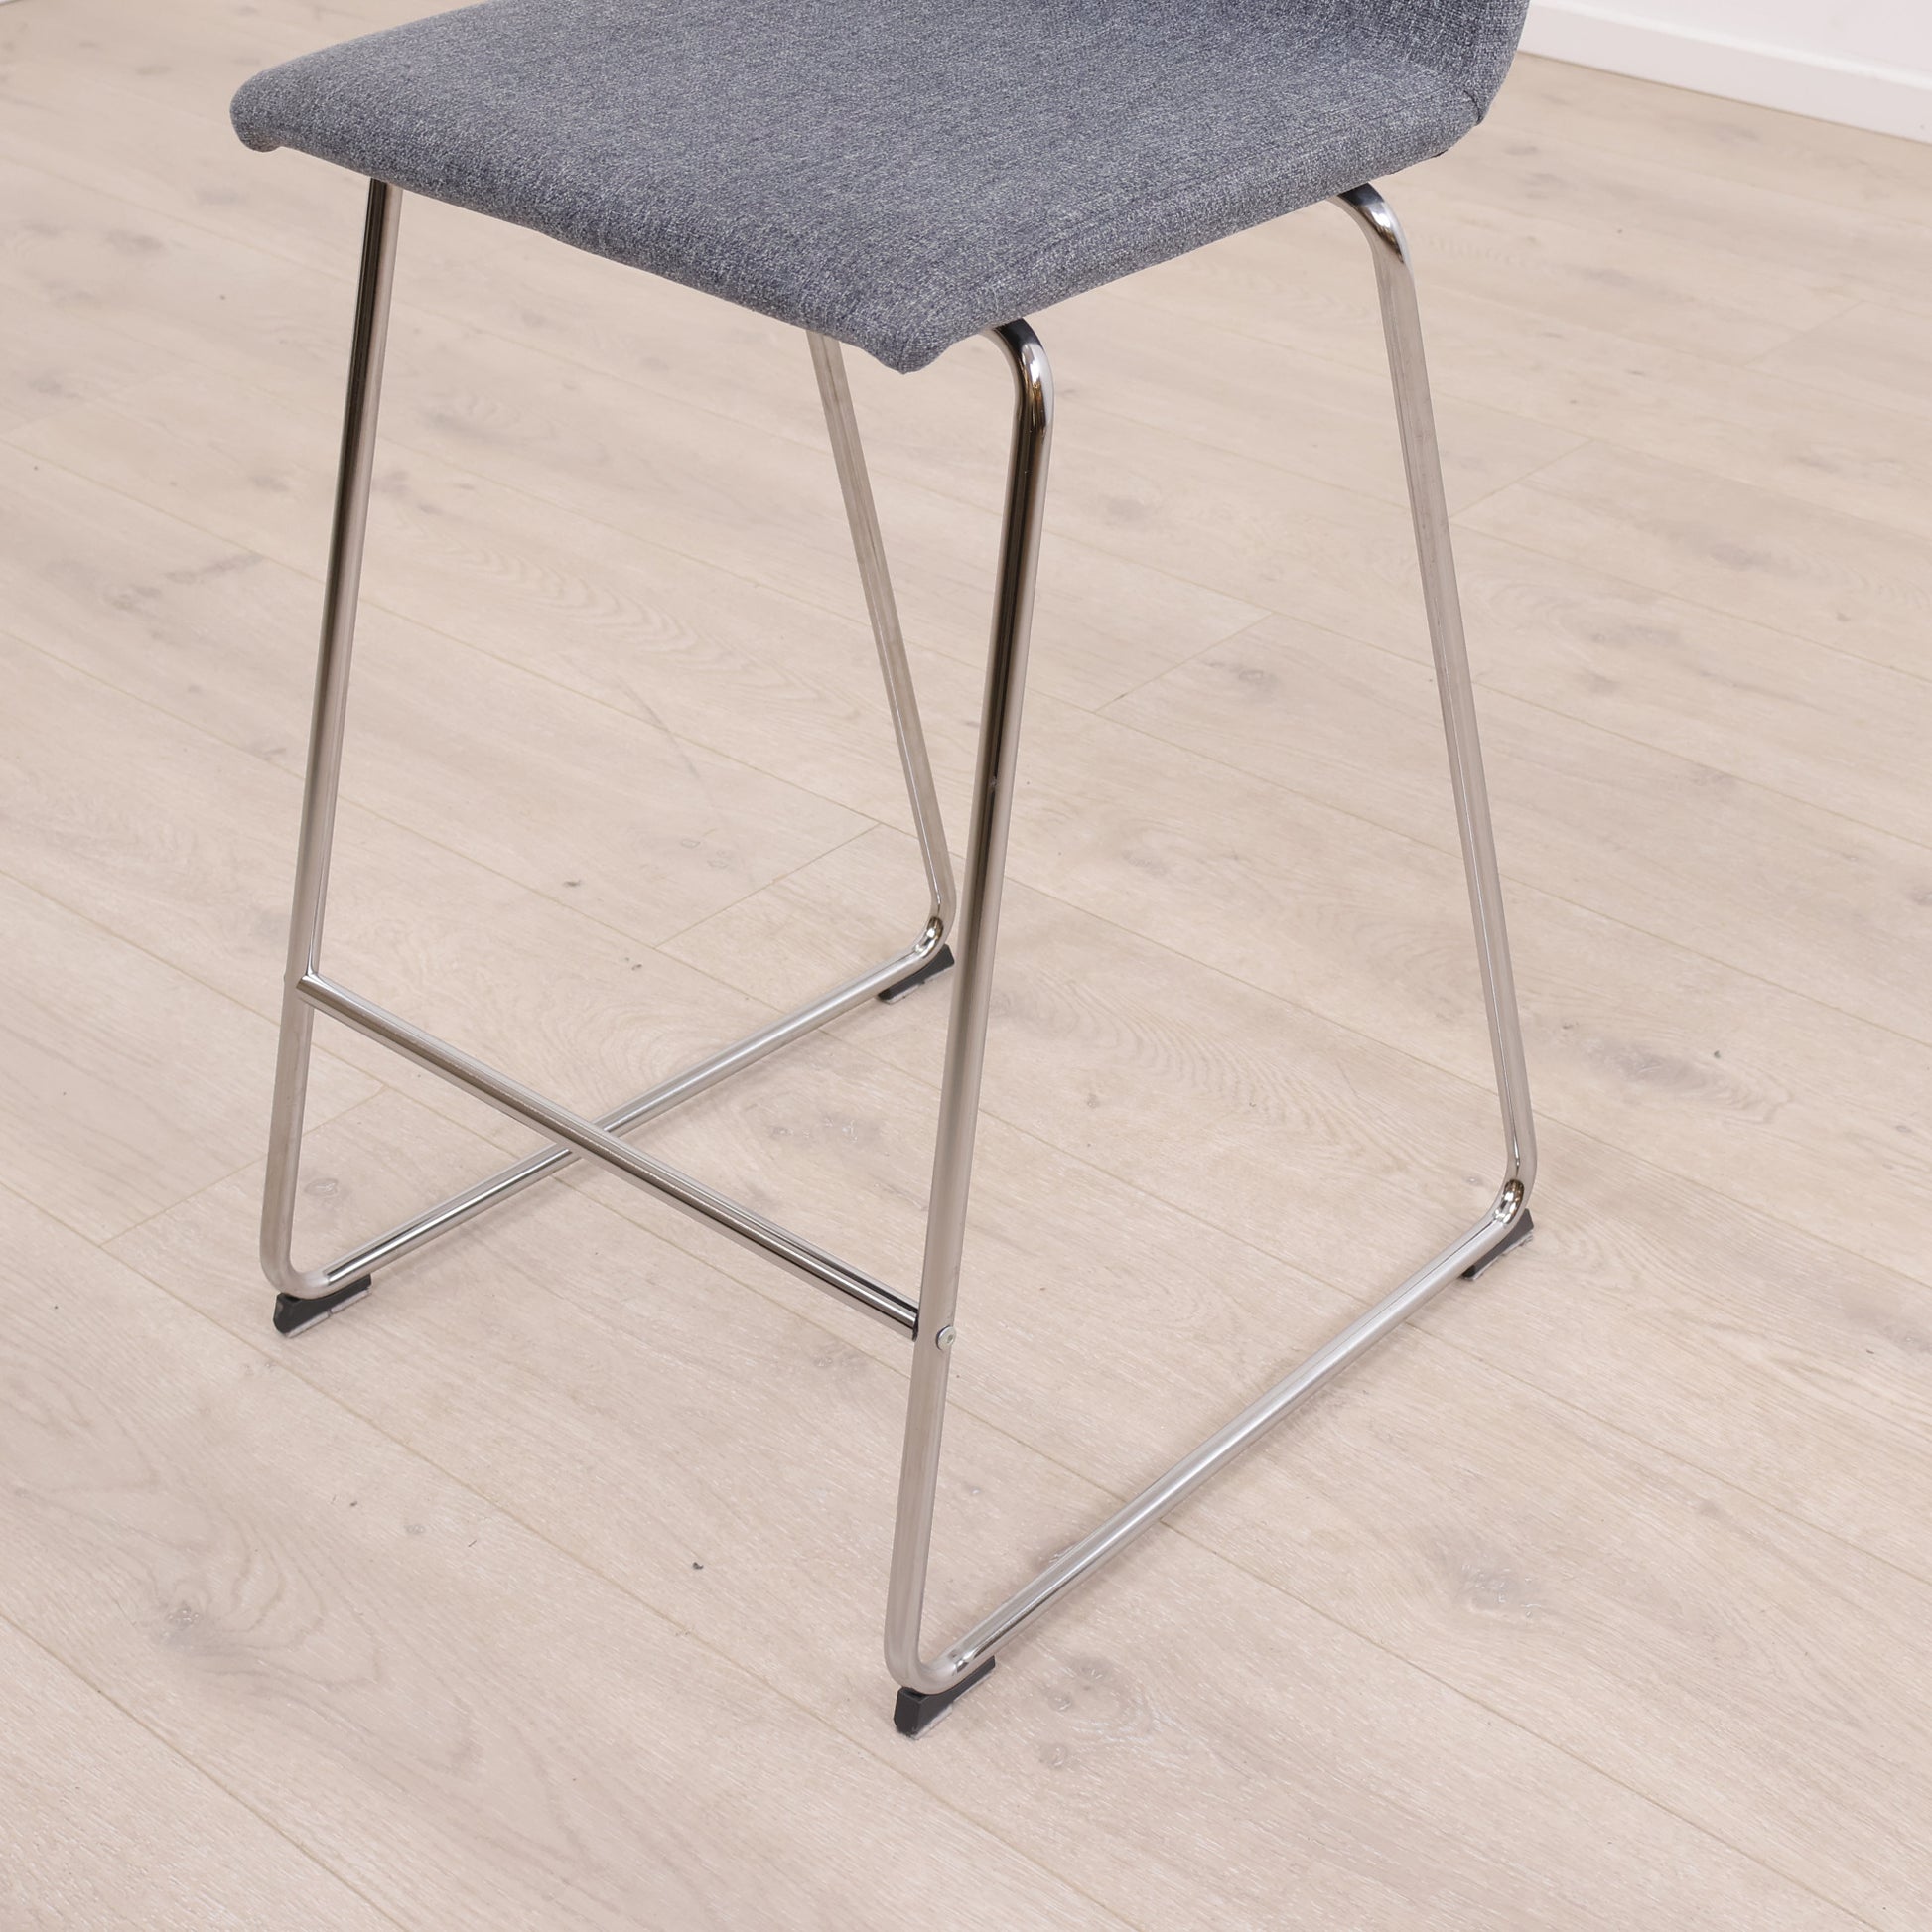 IKEA VOLFGANG barstol i grå farge